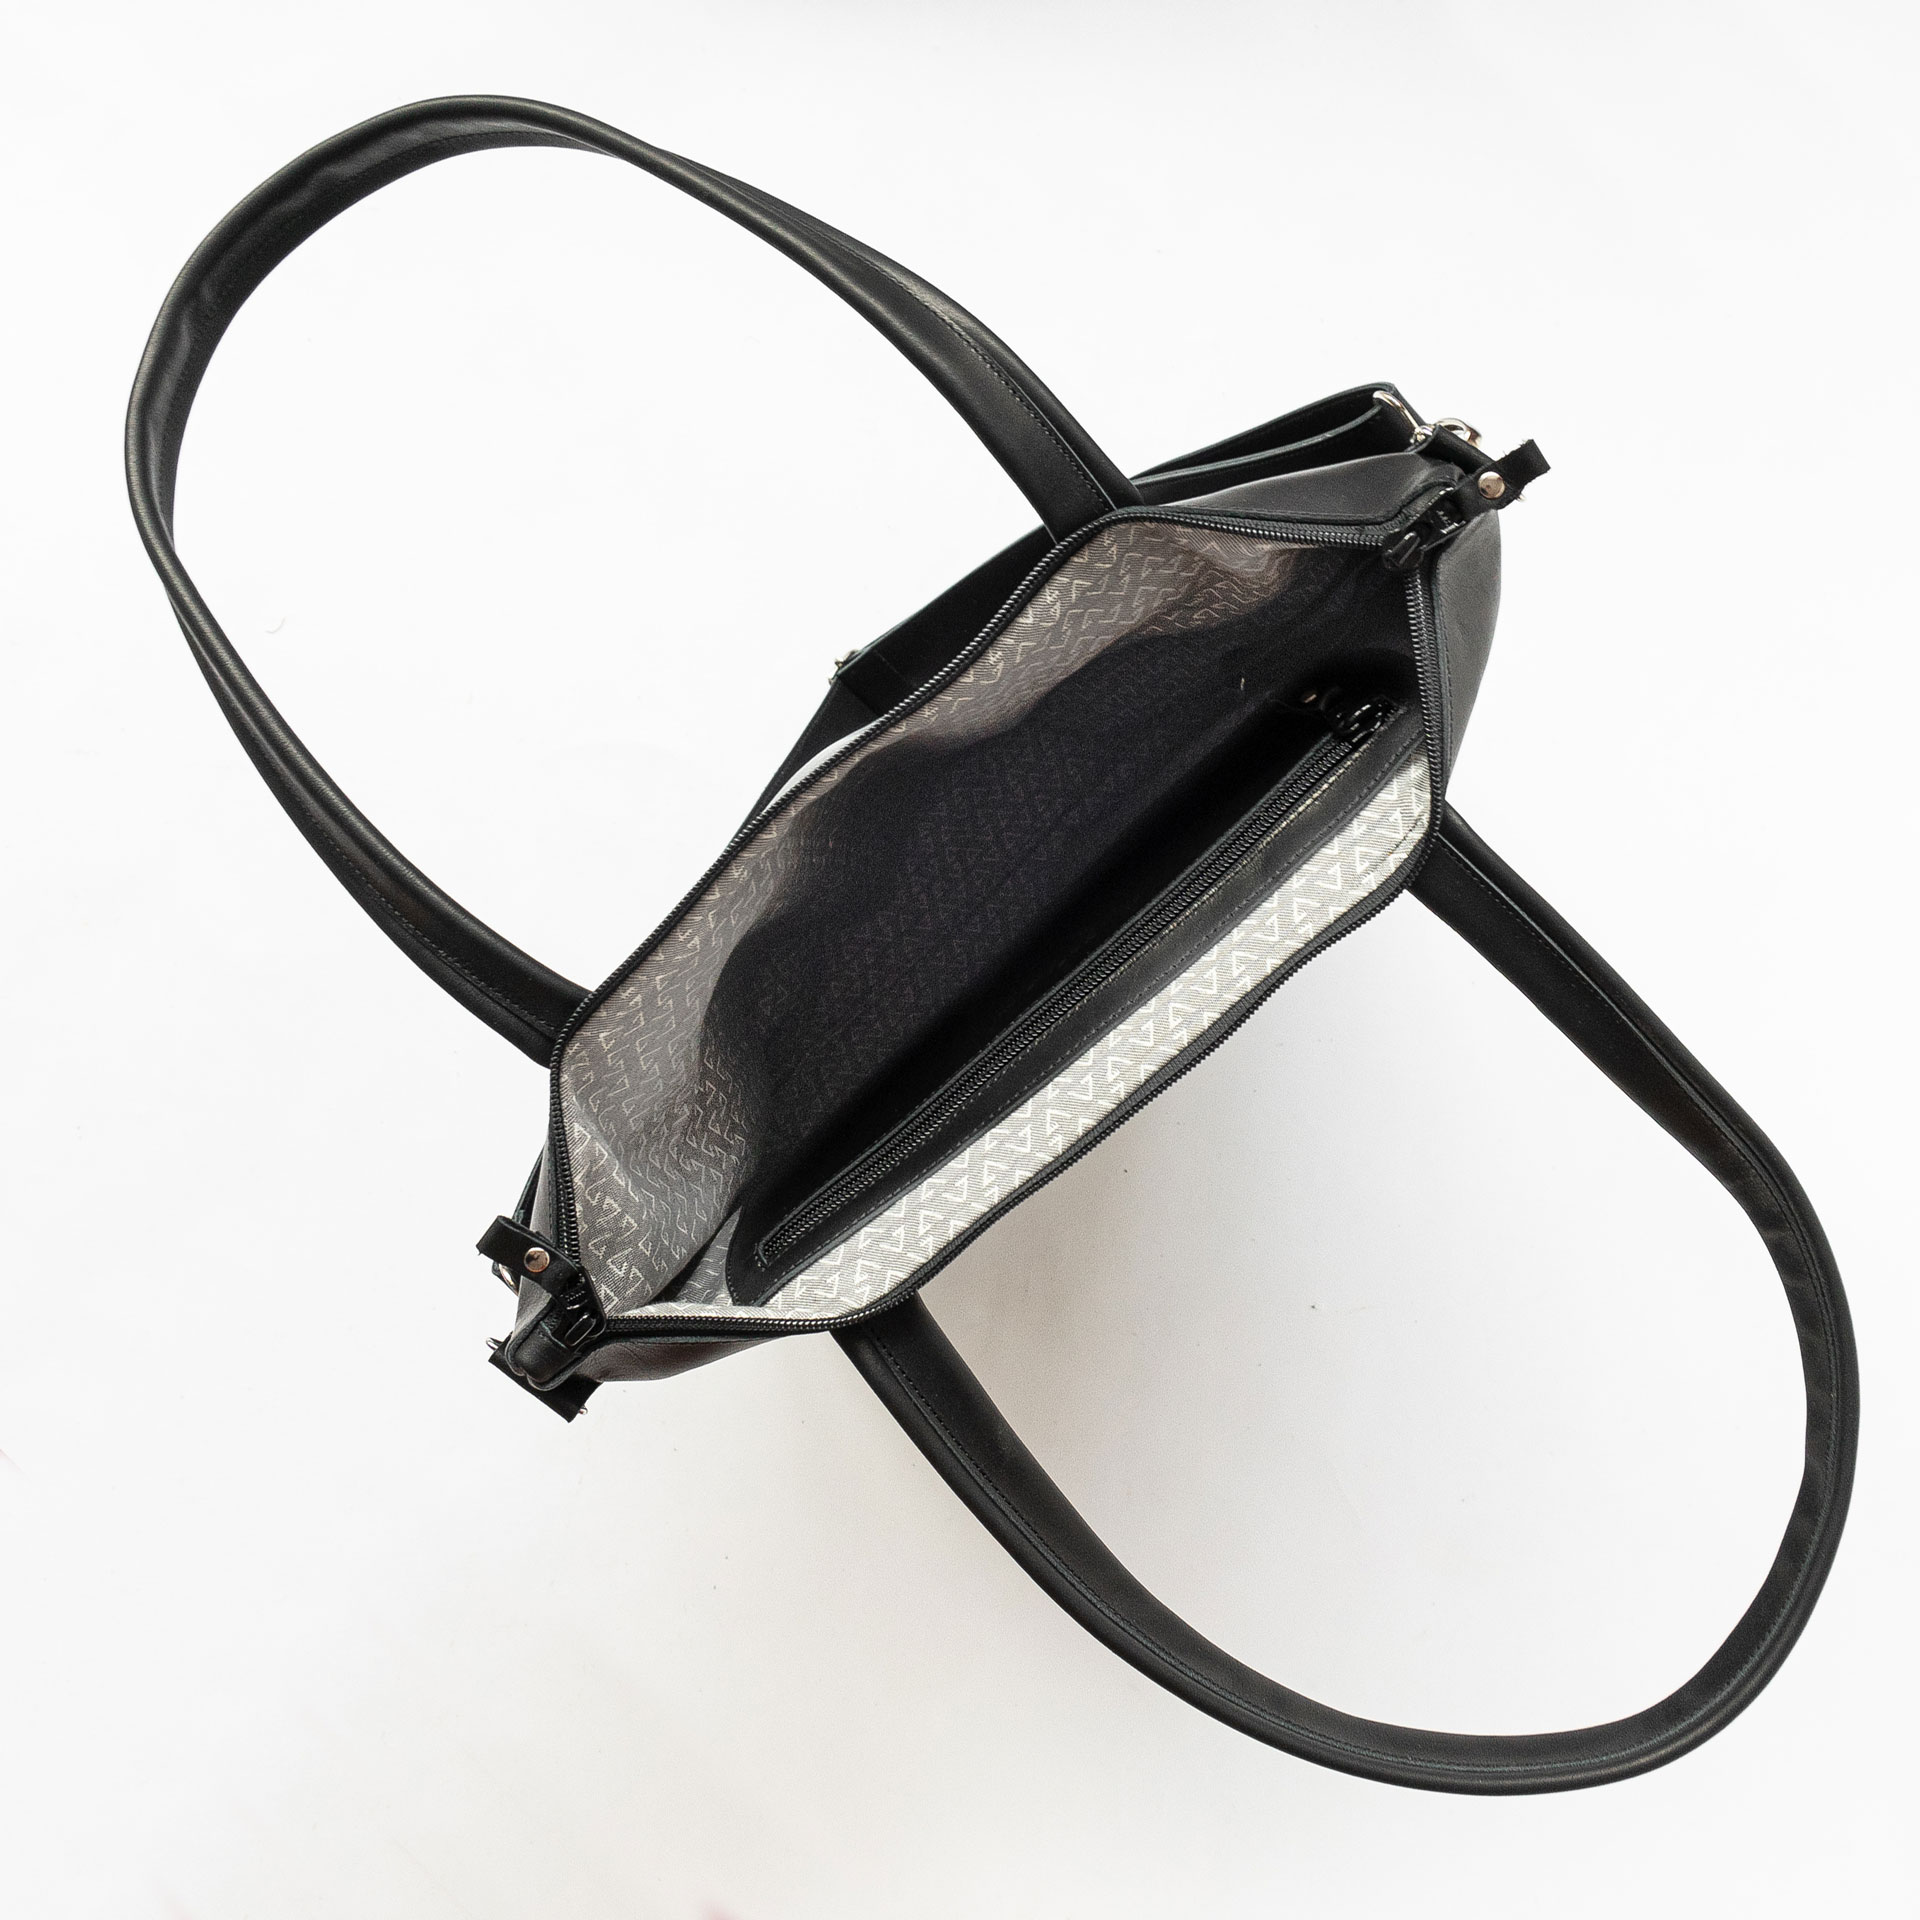 Innenansicht der Wickeltasche MIA MIDI aus Naturleder in Schwarz geölt mit Futterstoff und Innentasche mit Reißverschluss